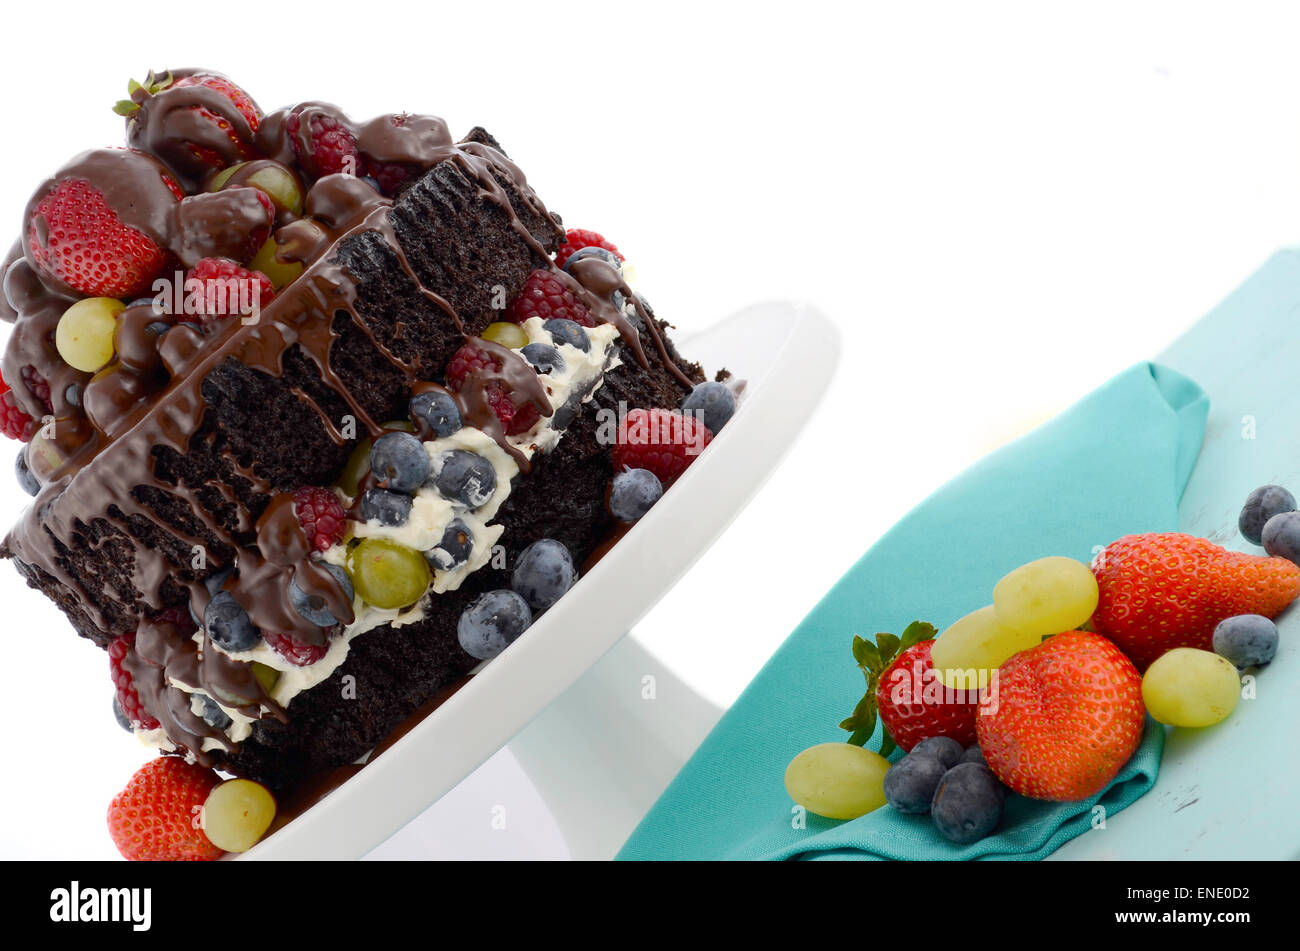 Herrlich göttlichen chocolate Cake mit Erdbeeren, Blaubeeren, Himbeeren und Trauben und Creme auf blass blauen shabby chic Reiter Stockfoto